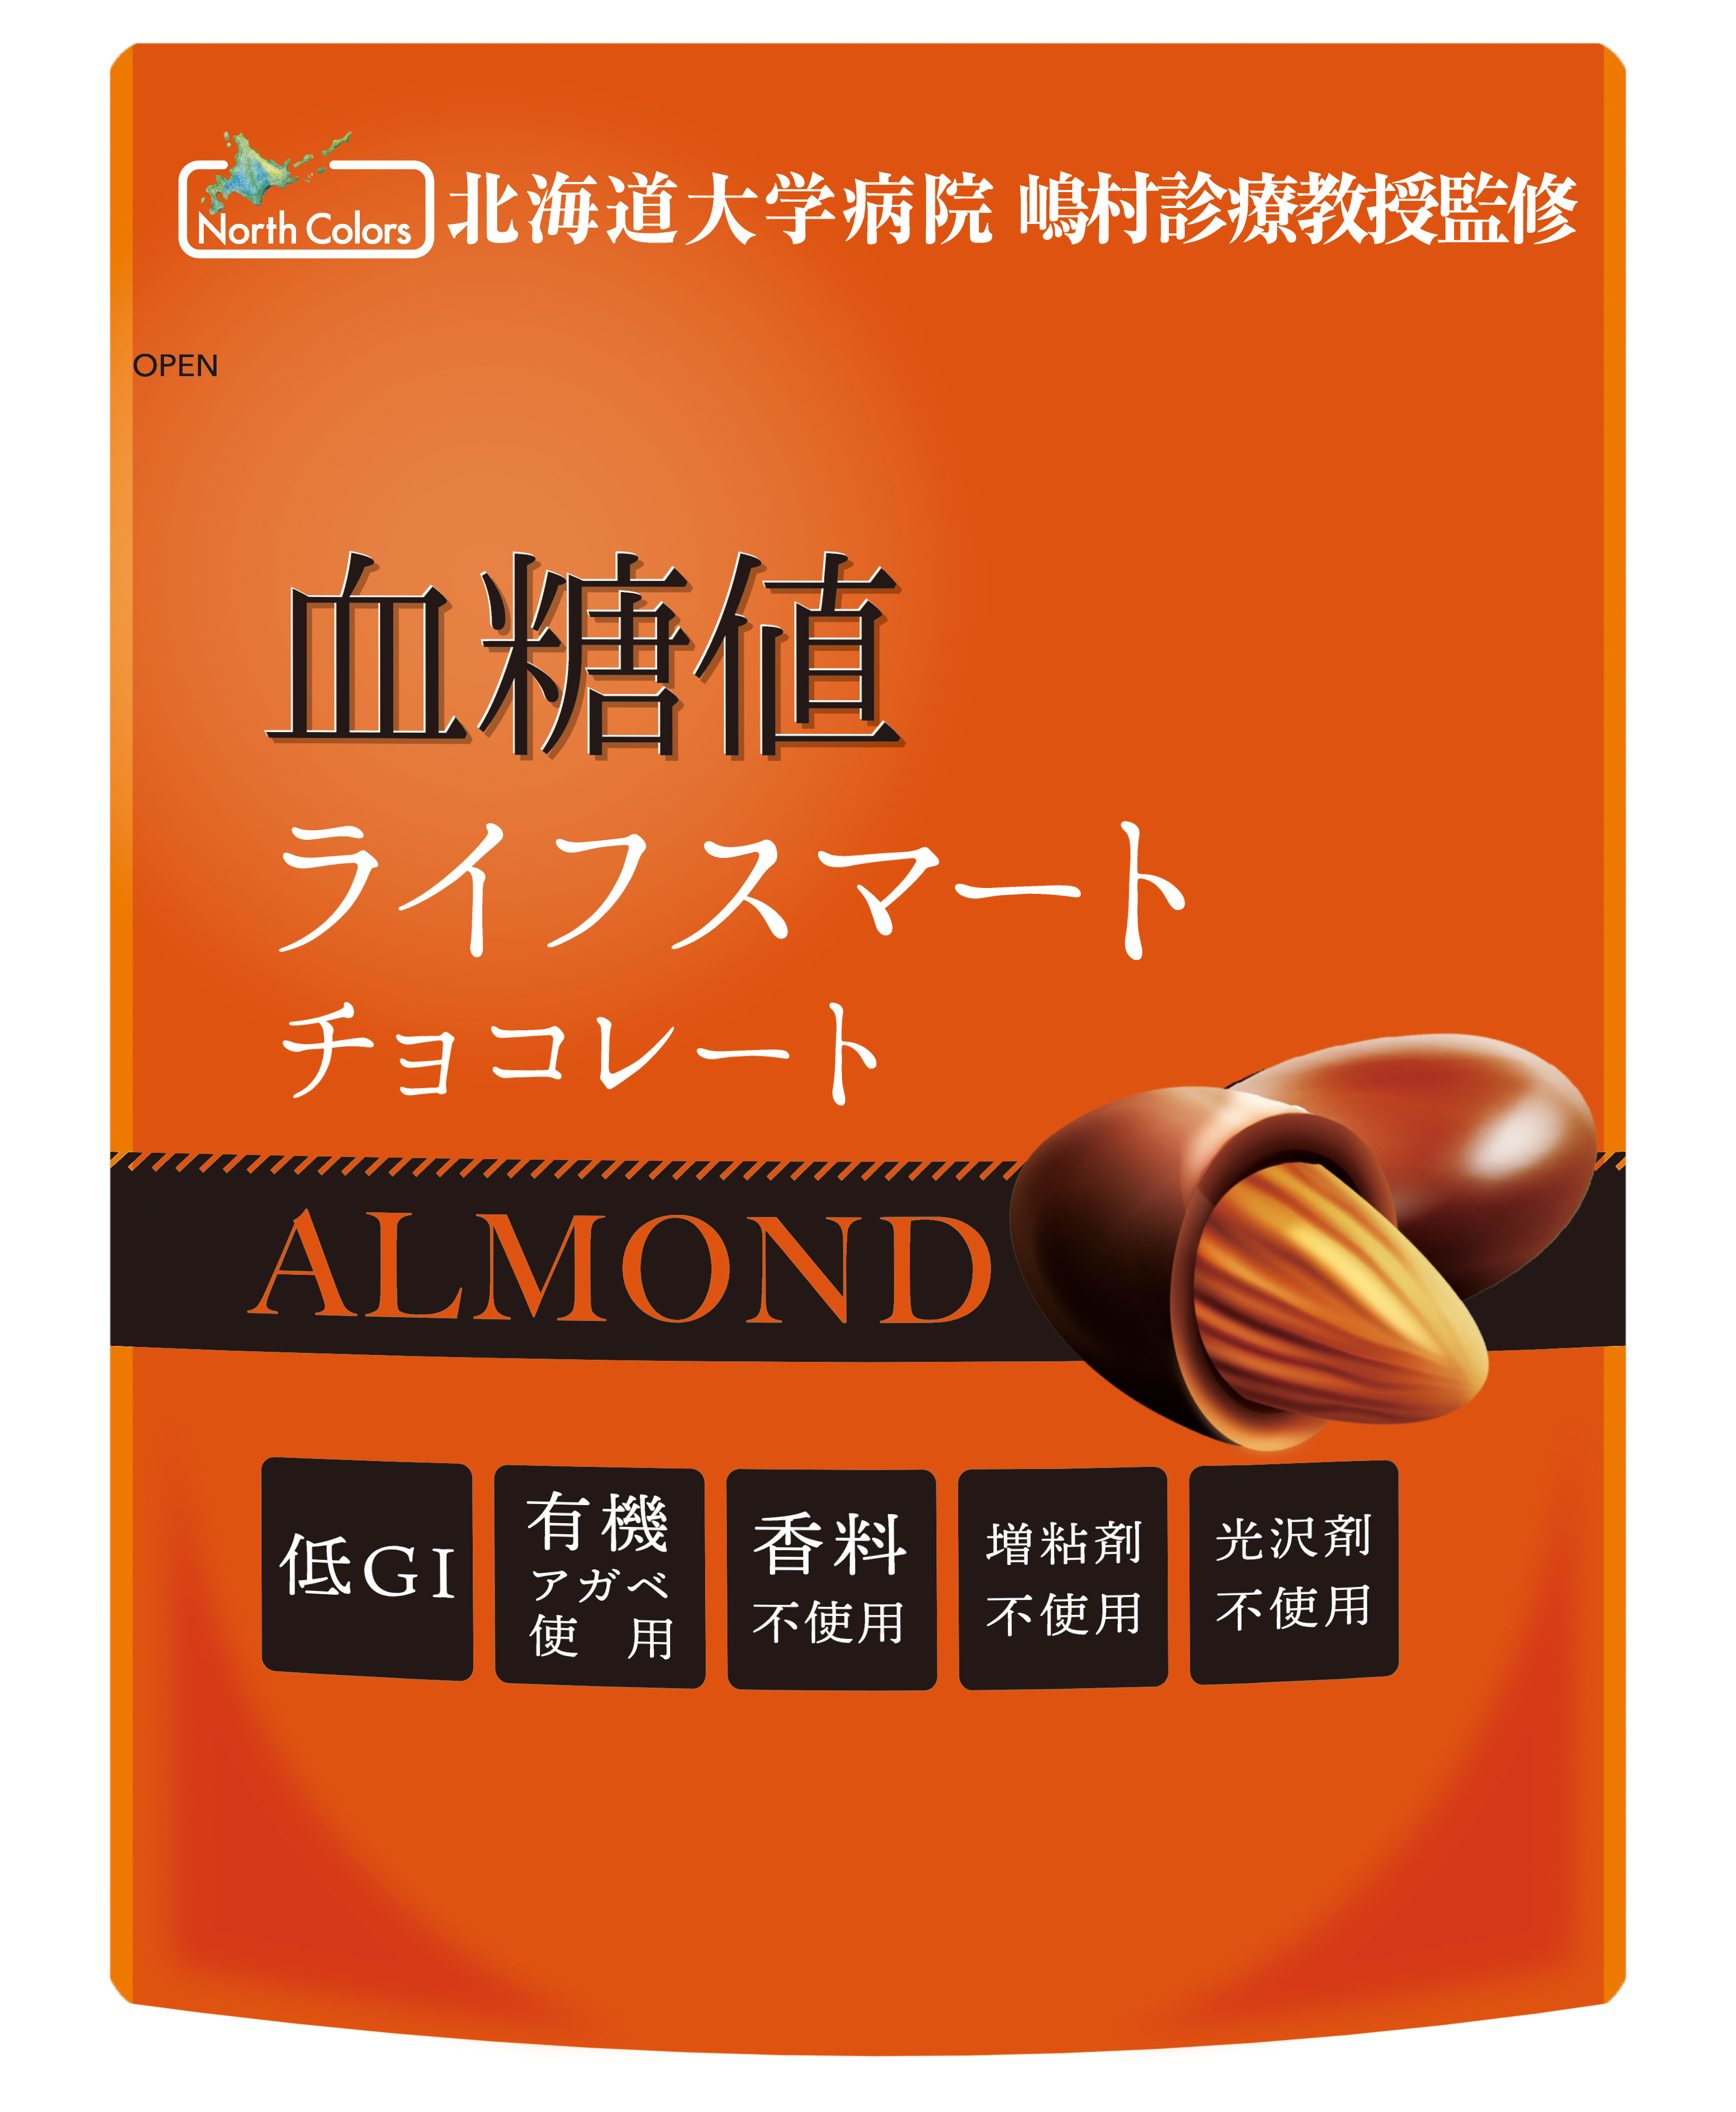 血糖値ライフスマート アーモンドチョコレート 株式会社ノースカラーズ